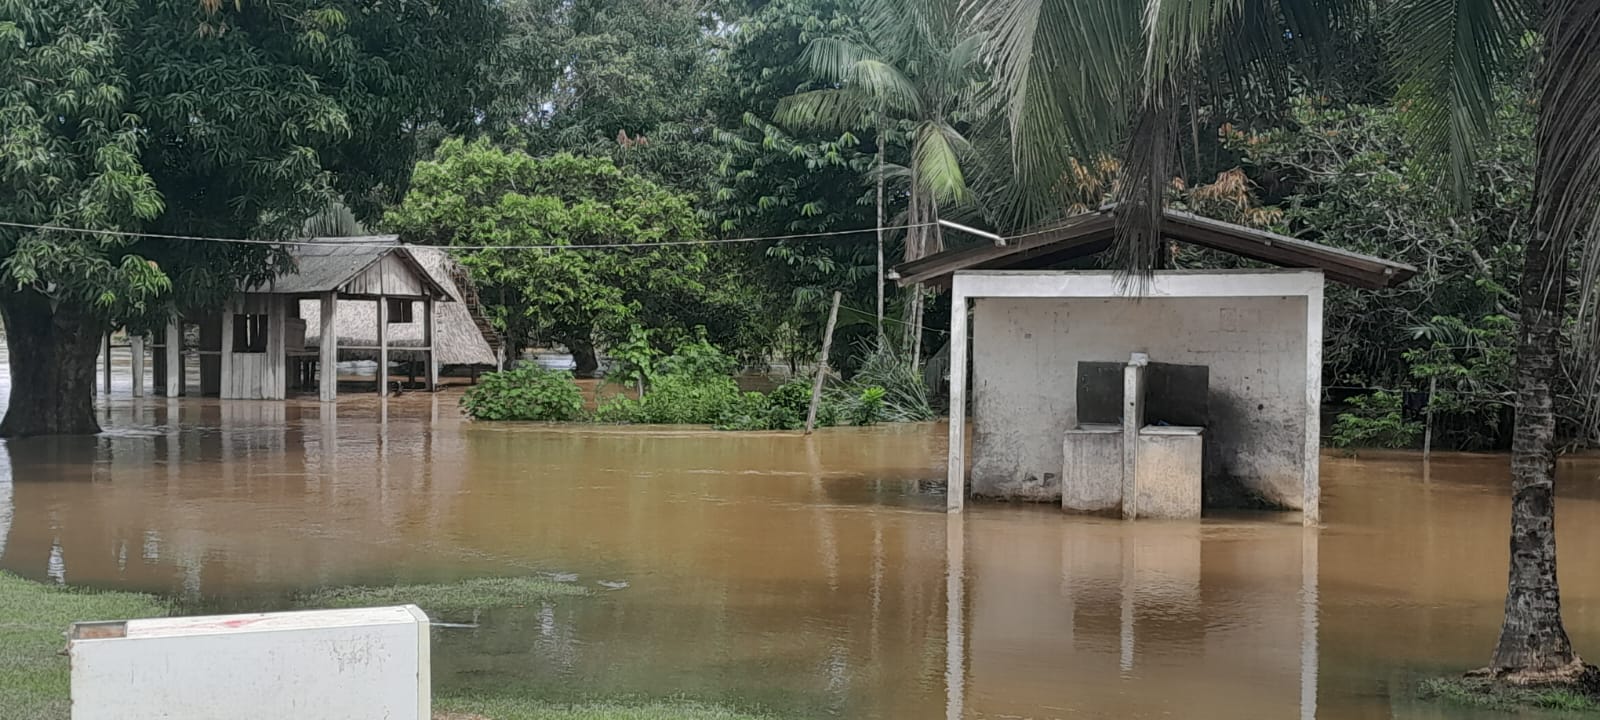 Chuvas acima da média em RO inundam a TI Rio Branco; PCHs agravam situação